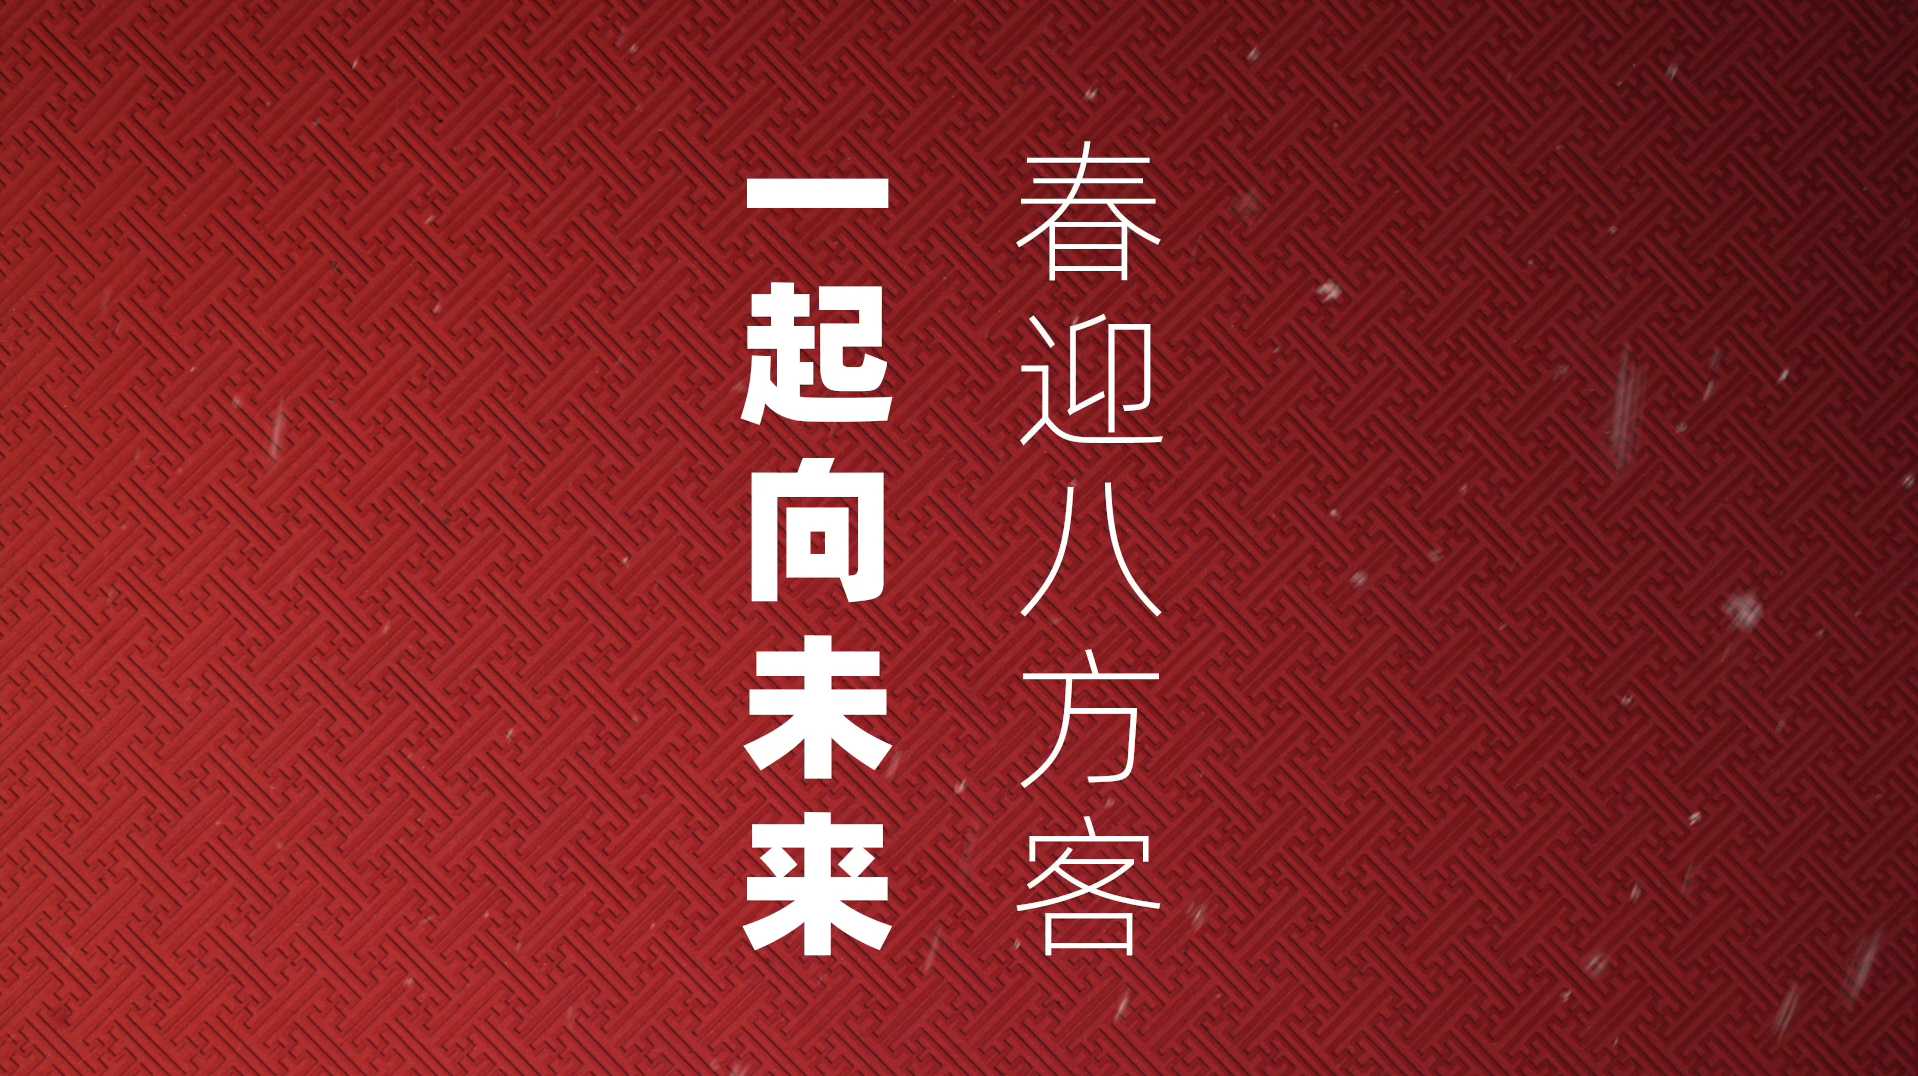 北京冬奥会图标创意剪纸视频-《春迎八方客 一起向未来》